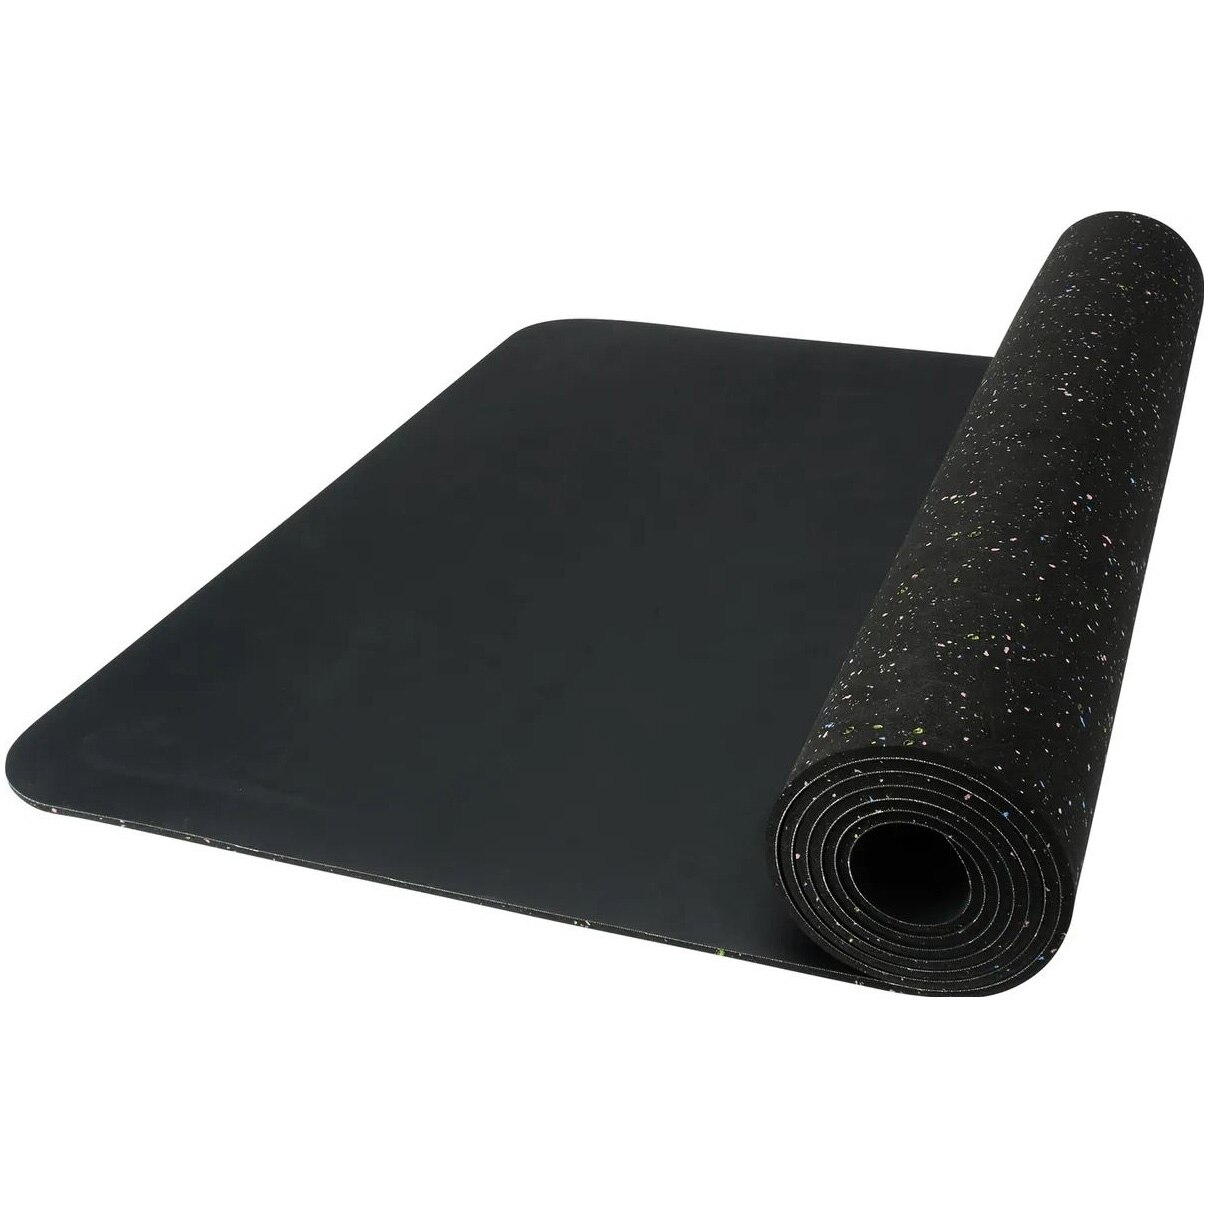 Fotografie Saltea fitness/yoga/pilates NIKE Mastery, 200 x 68 x 0.5 cm, negru